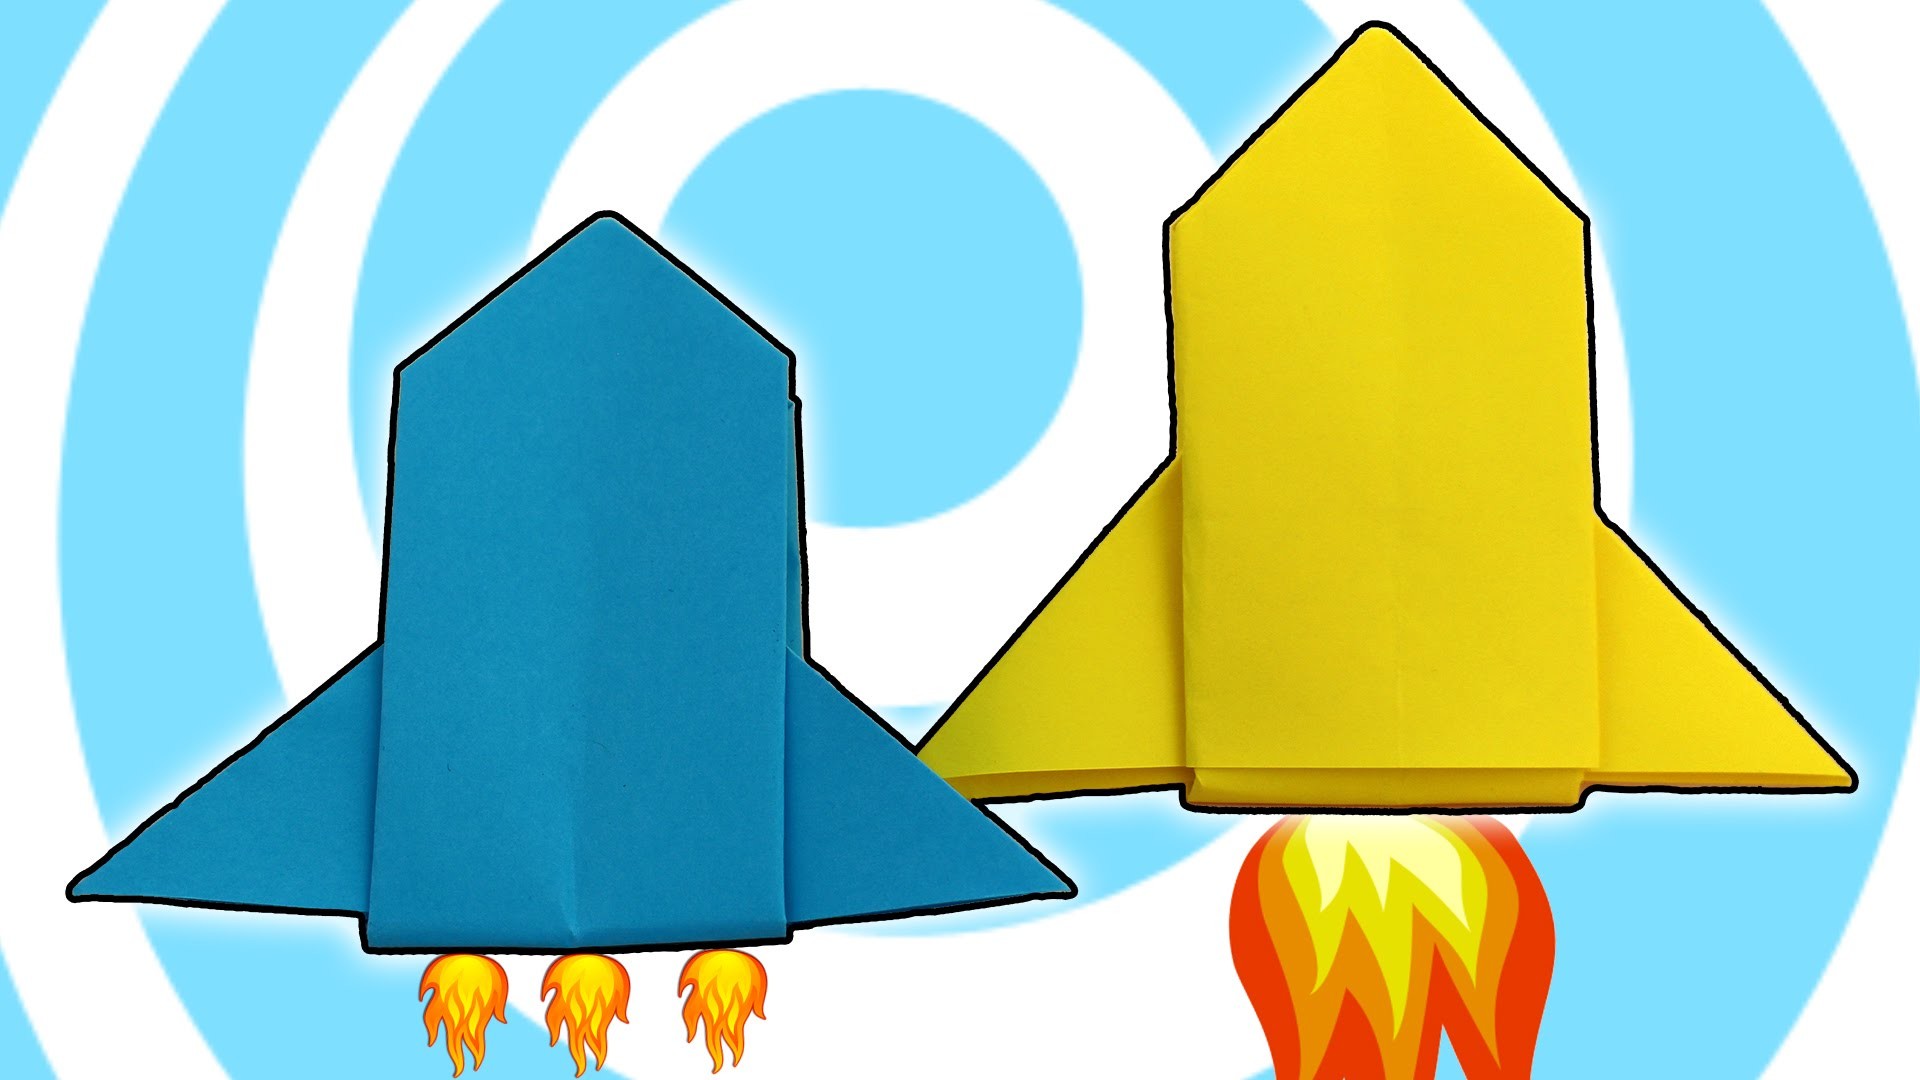 Оригами ракета старшая группа